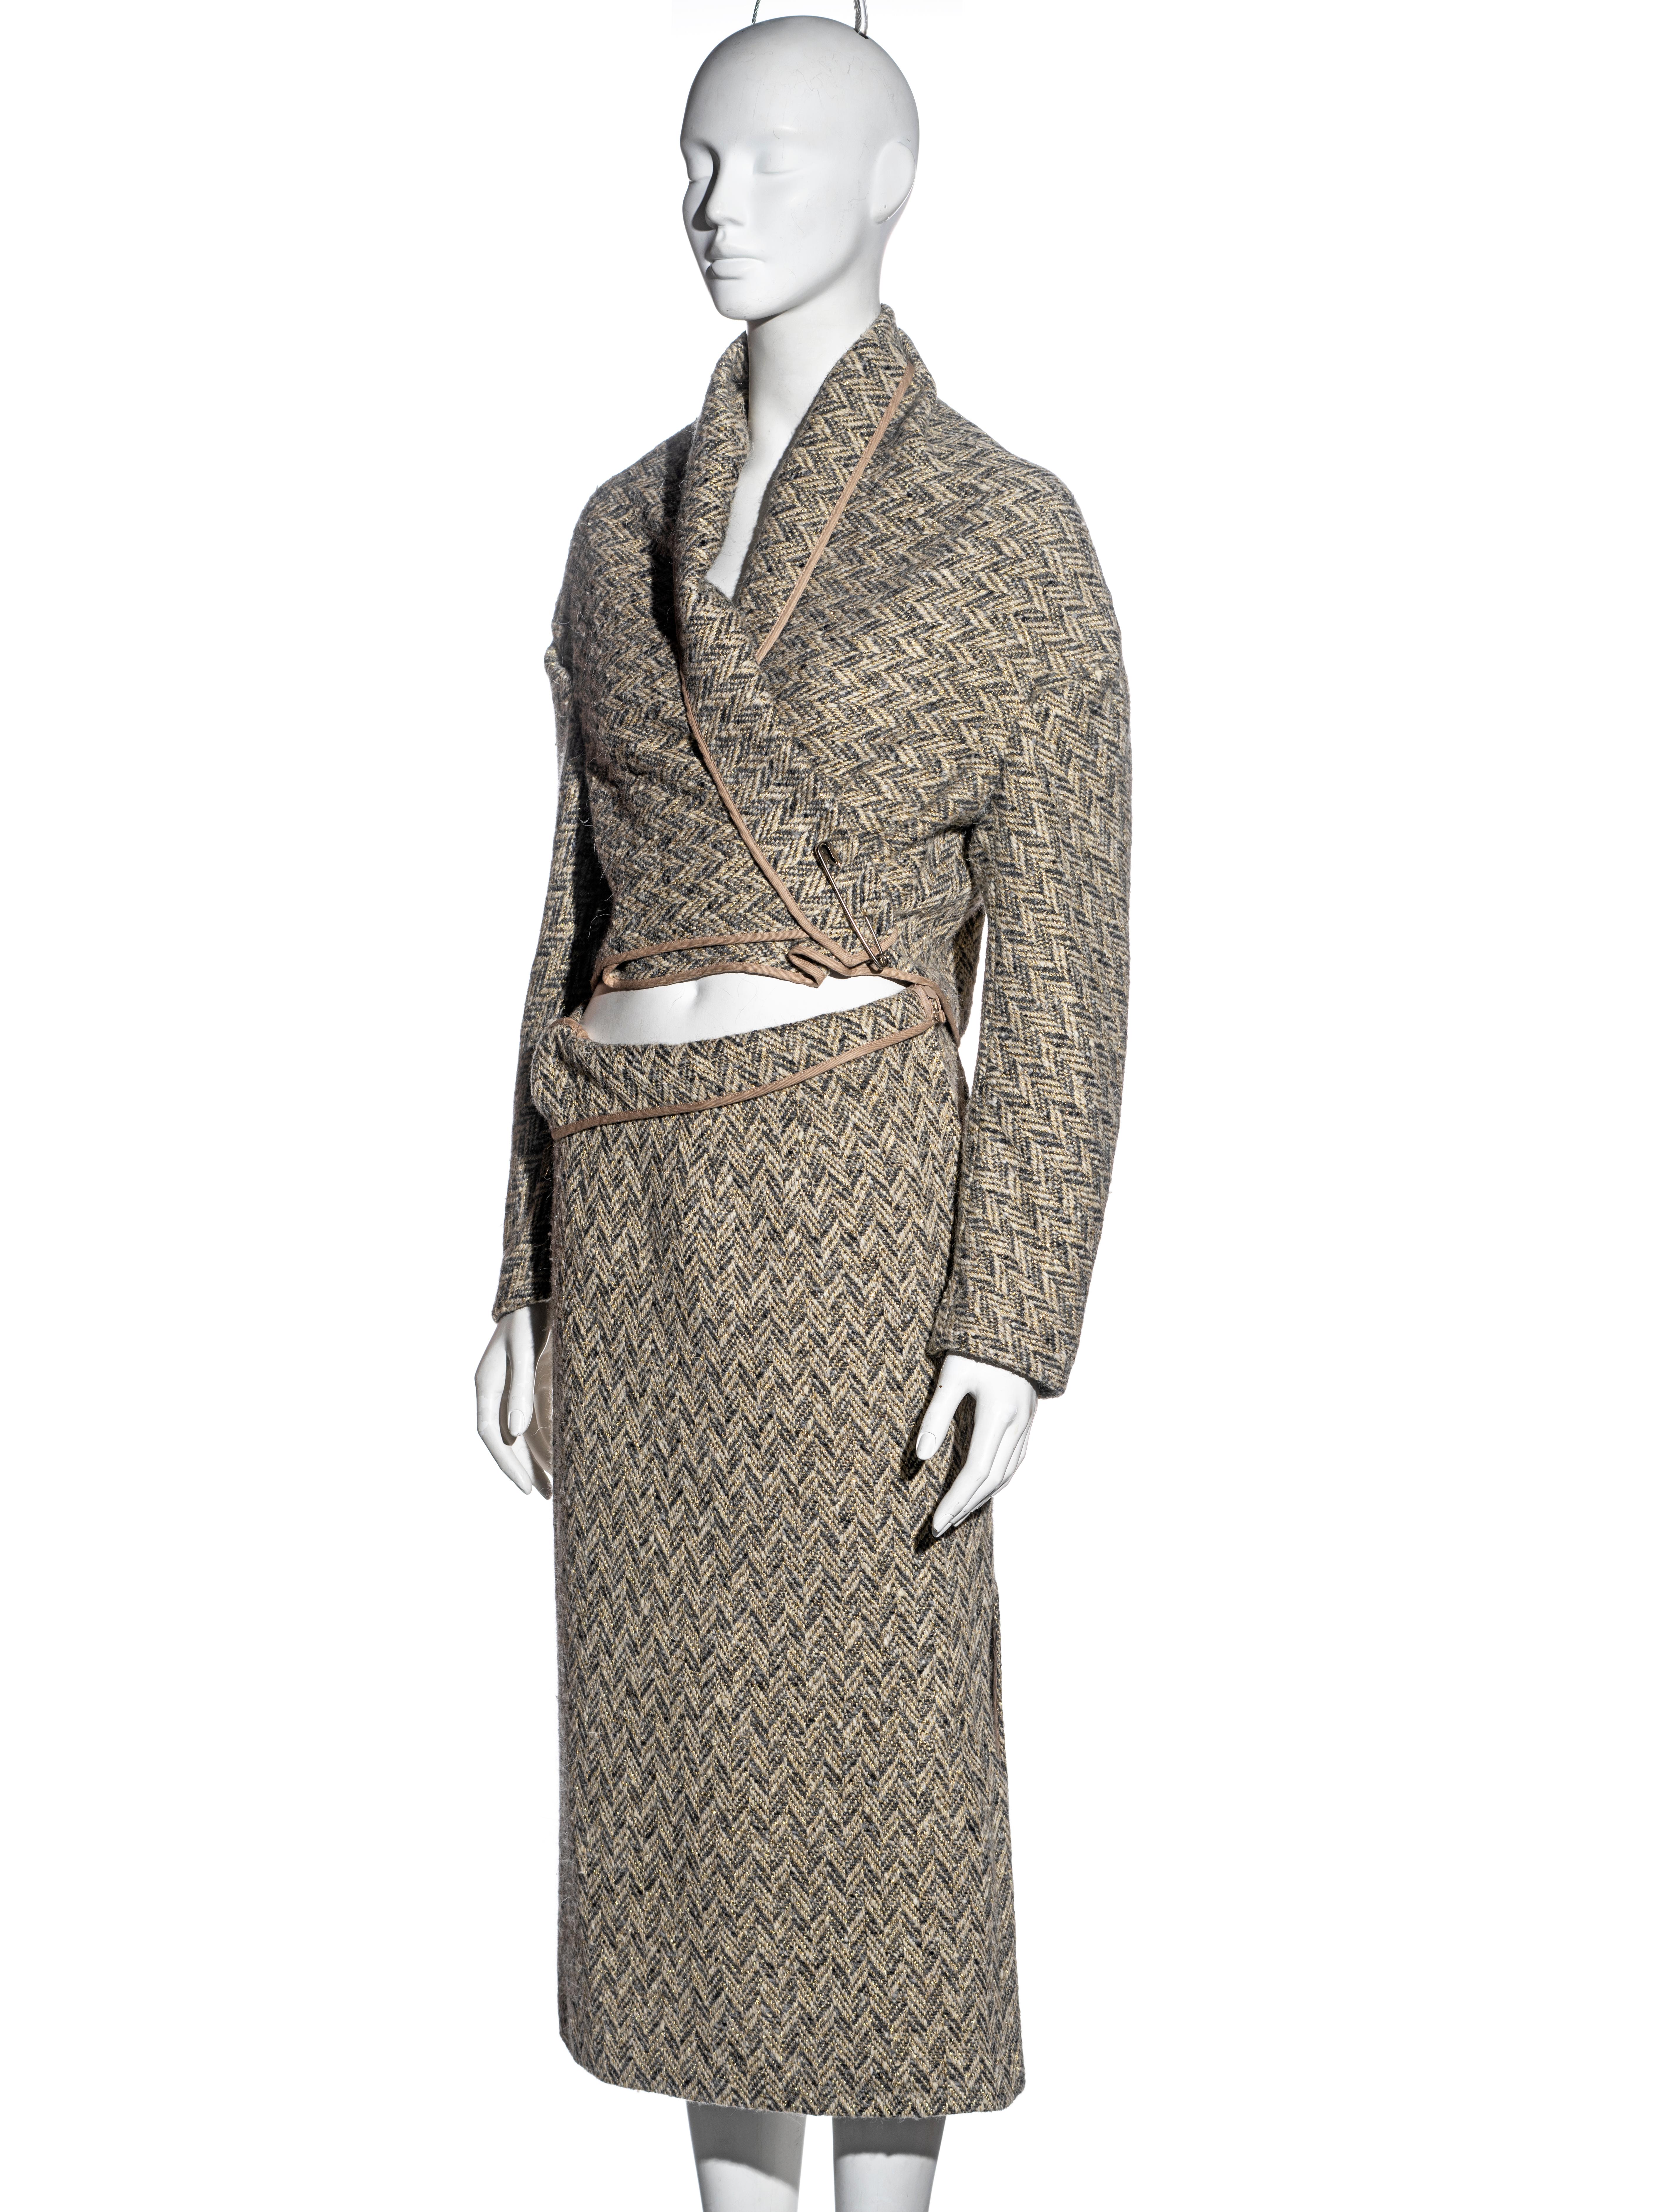 Comme des Garçons bias-cut herringbone tweed skirt suit, fw 1999 For Sale 3